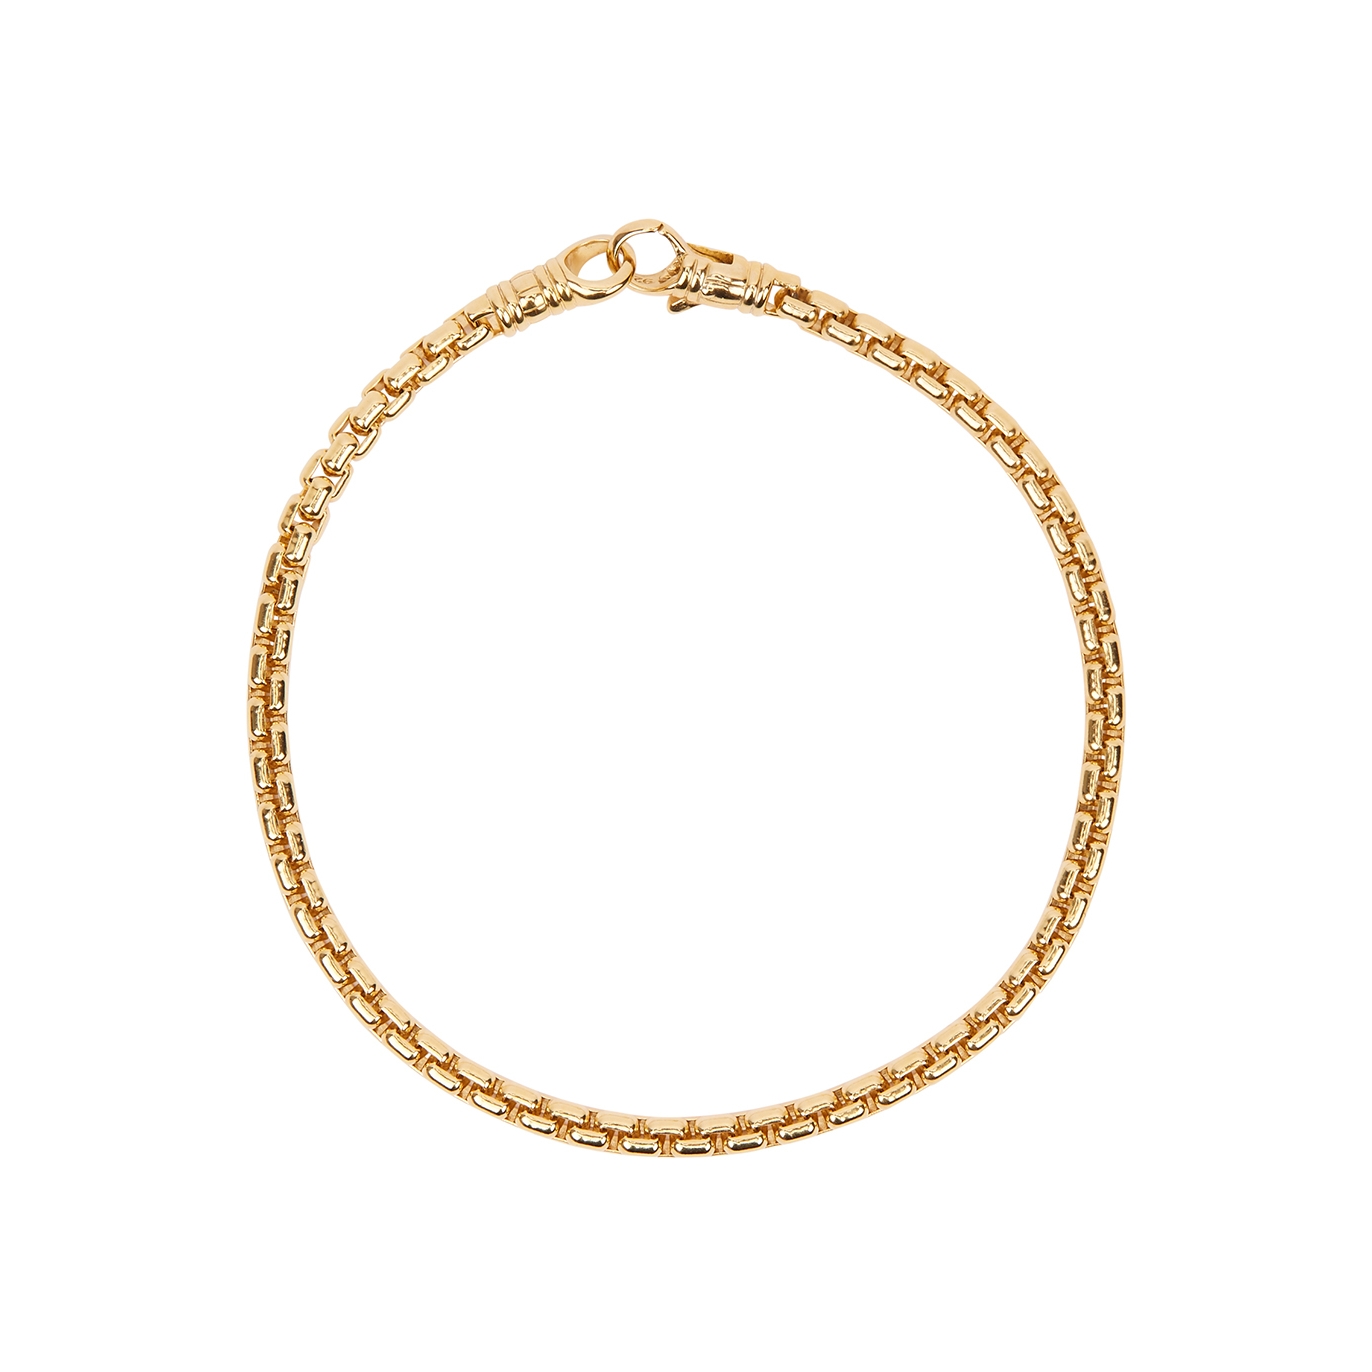 Venetian 9kt Gold-plated Chain Bracelet